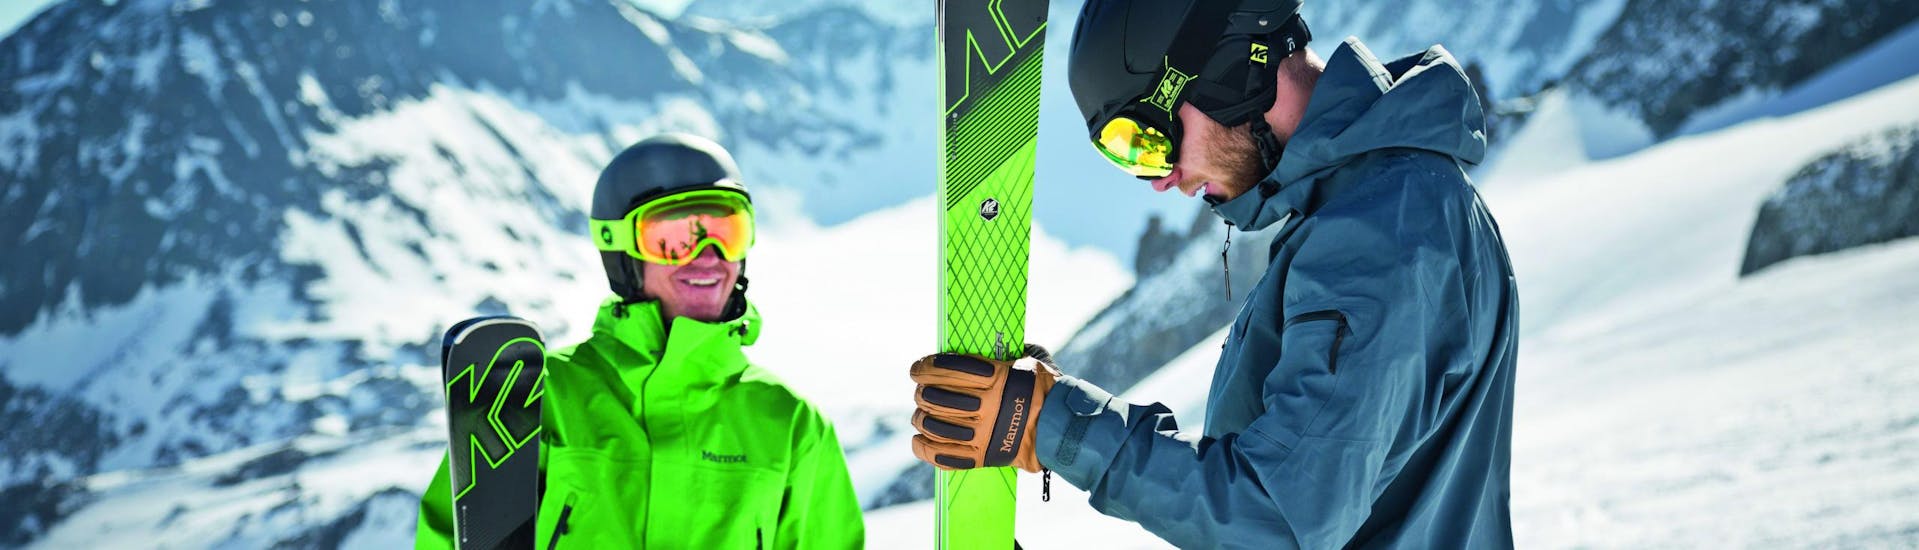 Privé skilessen voor volwassenen "Spoedcursus" voor alle niveaus met Skischule Snow Academy Monika Berwein.